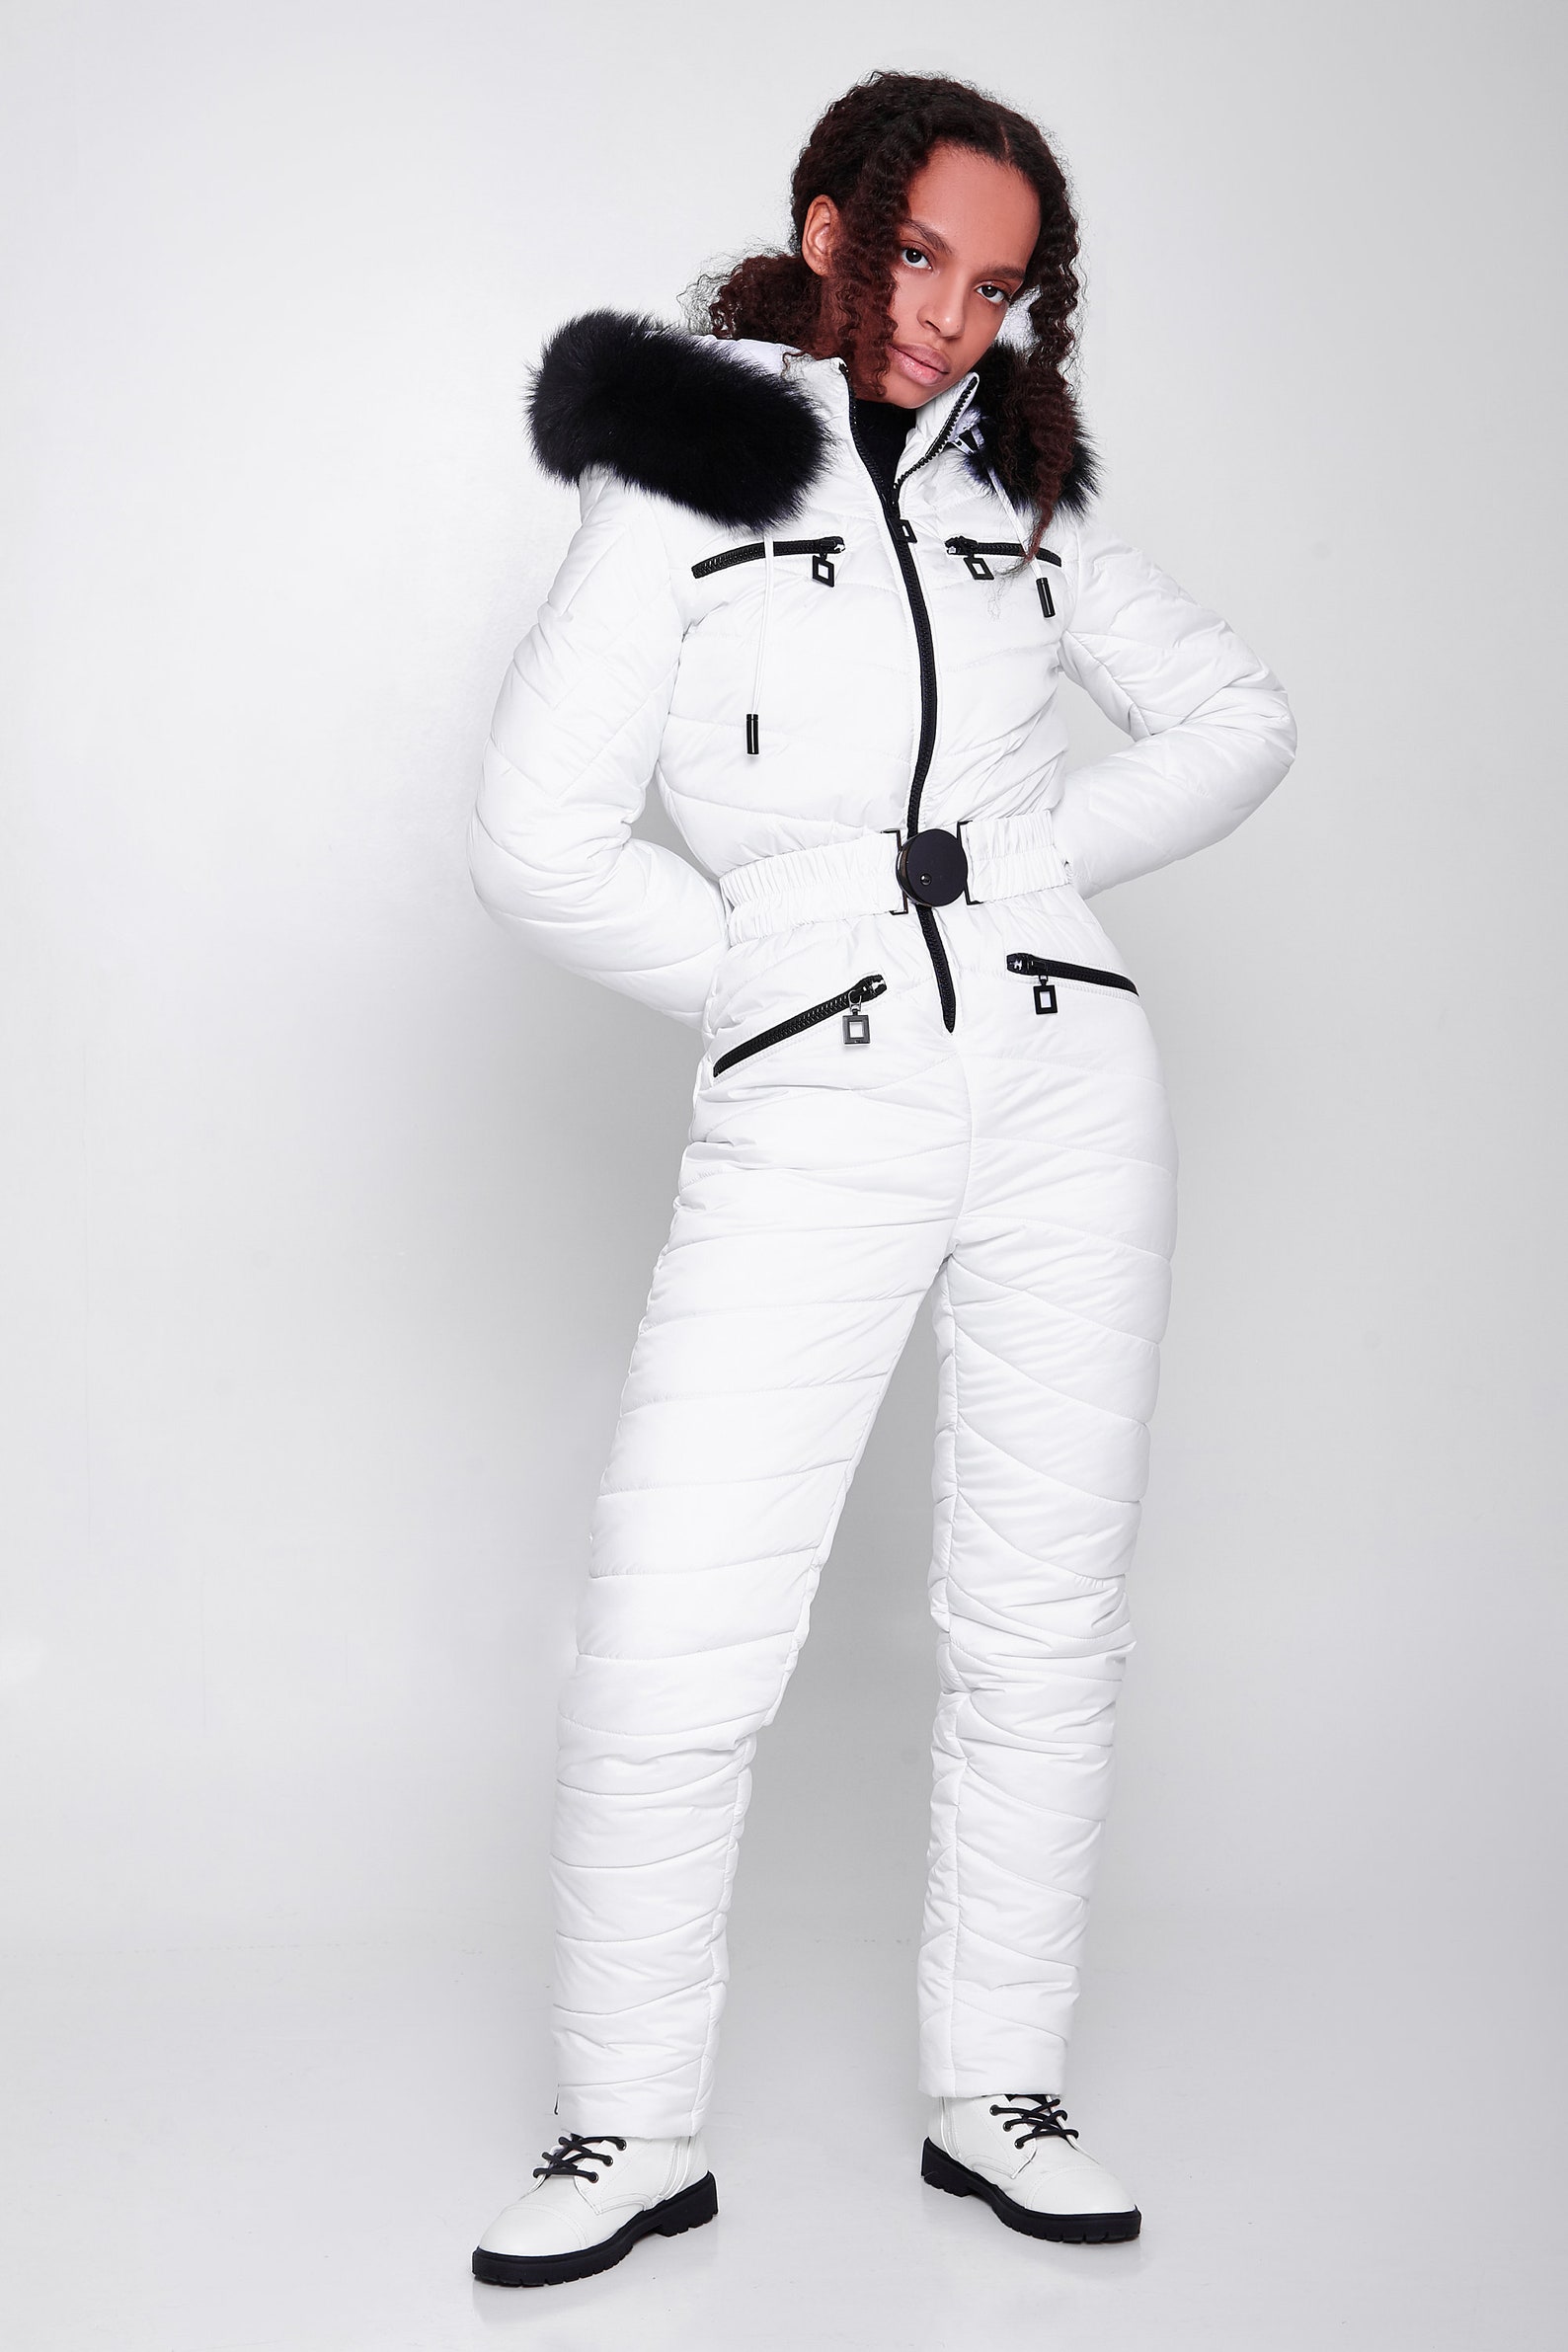 White Ski Suit for Women Snowsuit One Piece Ski Suit Warm Snow | Etsy